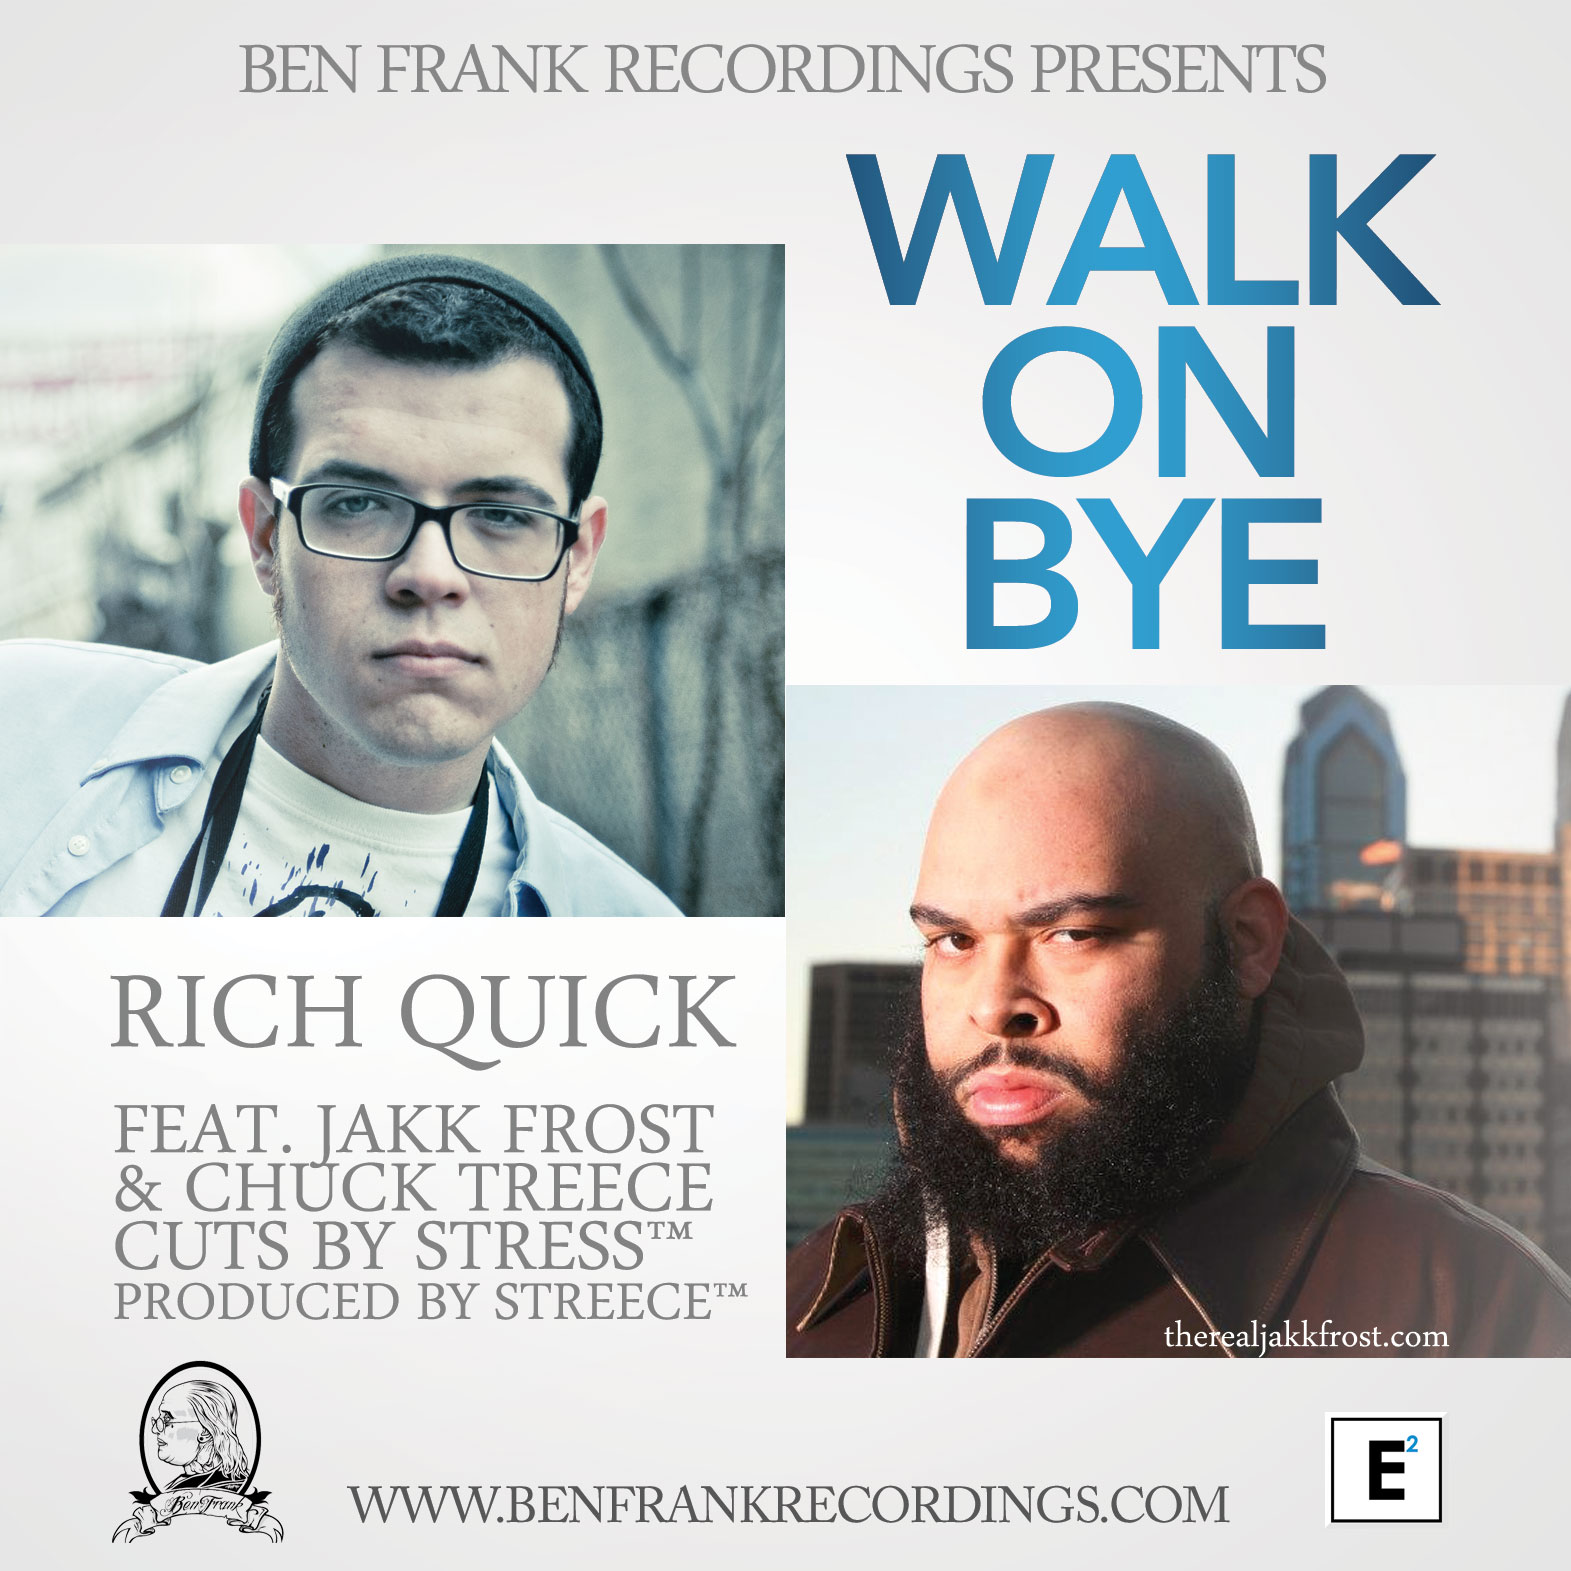 rich-quick-walk-on-bye-ft-jakk-frost-chuck-treece-prod-by-streece-HHS1987-2013 Rich Quick - Walk On Bye Ft. Jakk Frost & Chuck Treece (Prod by Streece)  